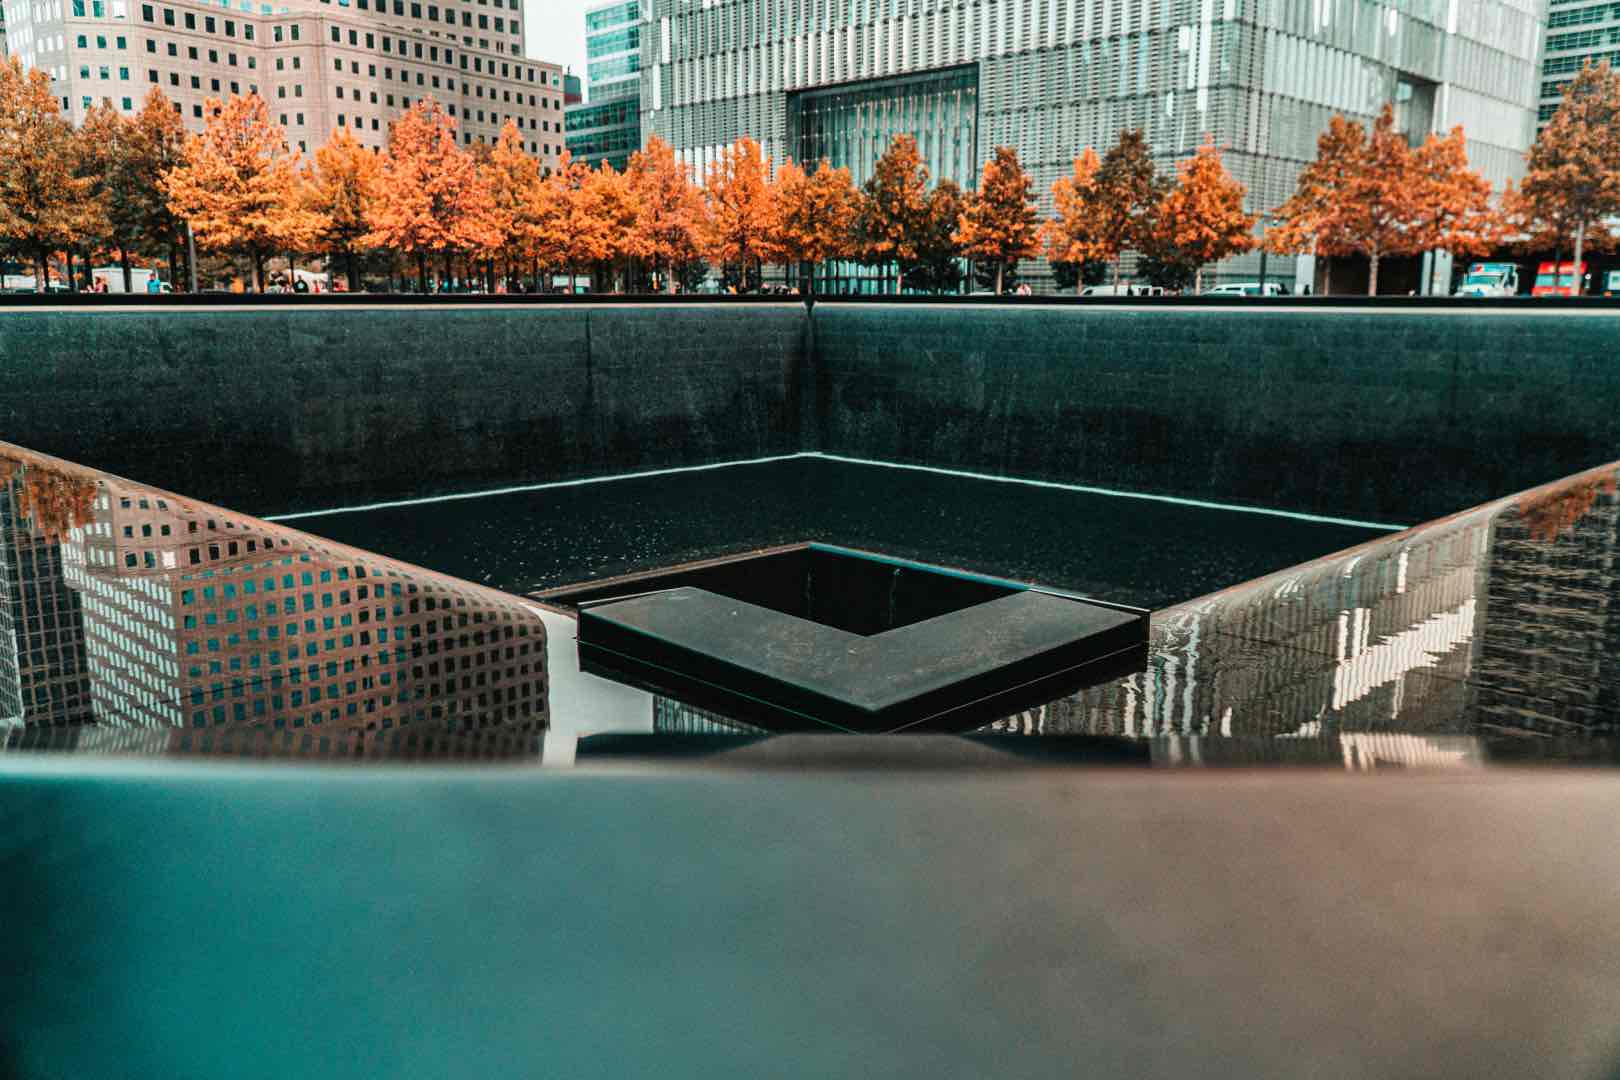 ground zero, dark